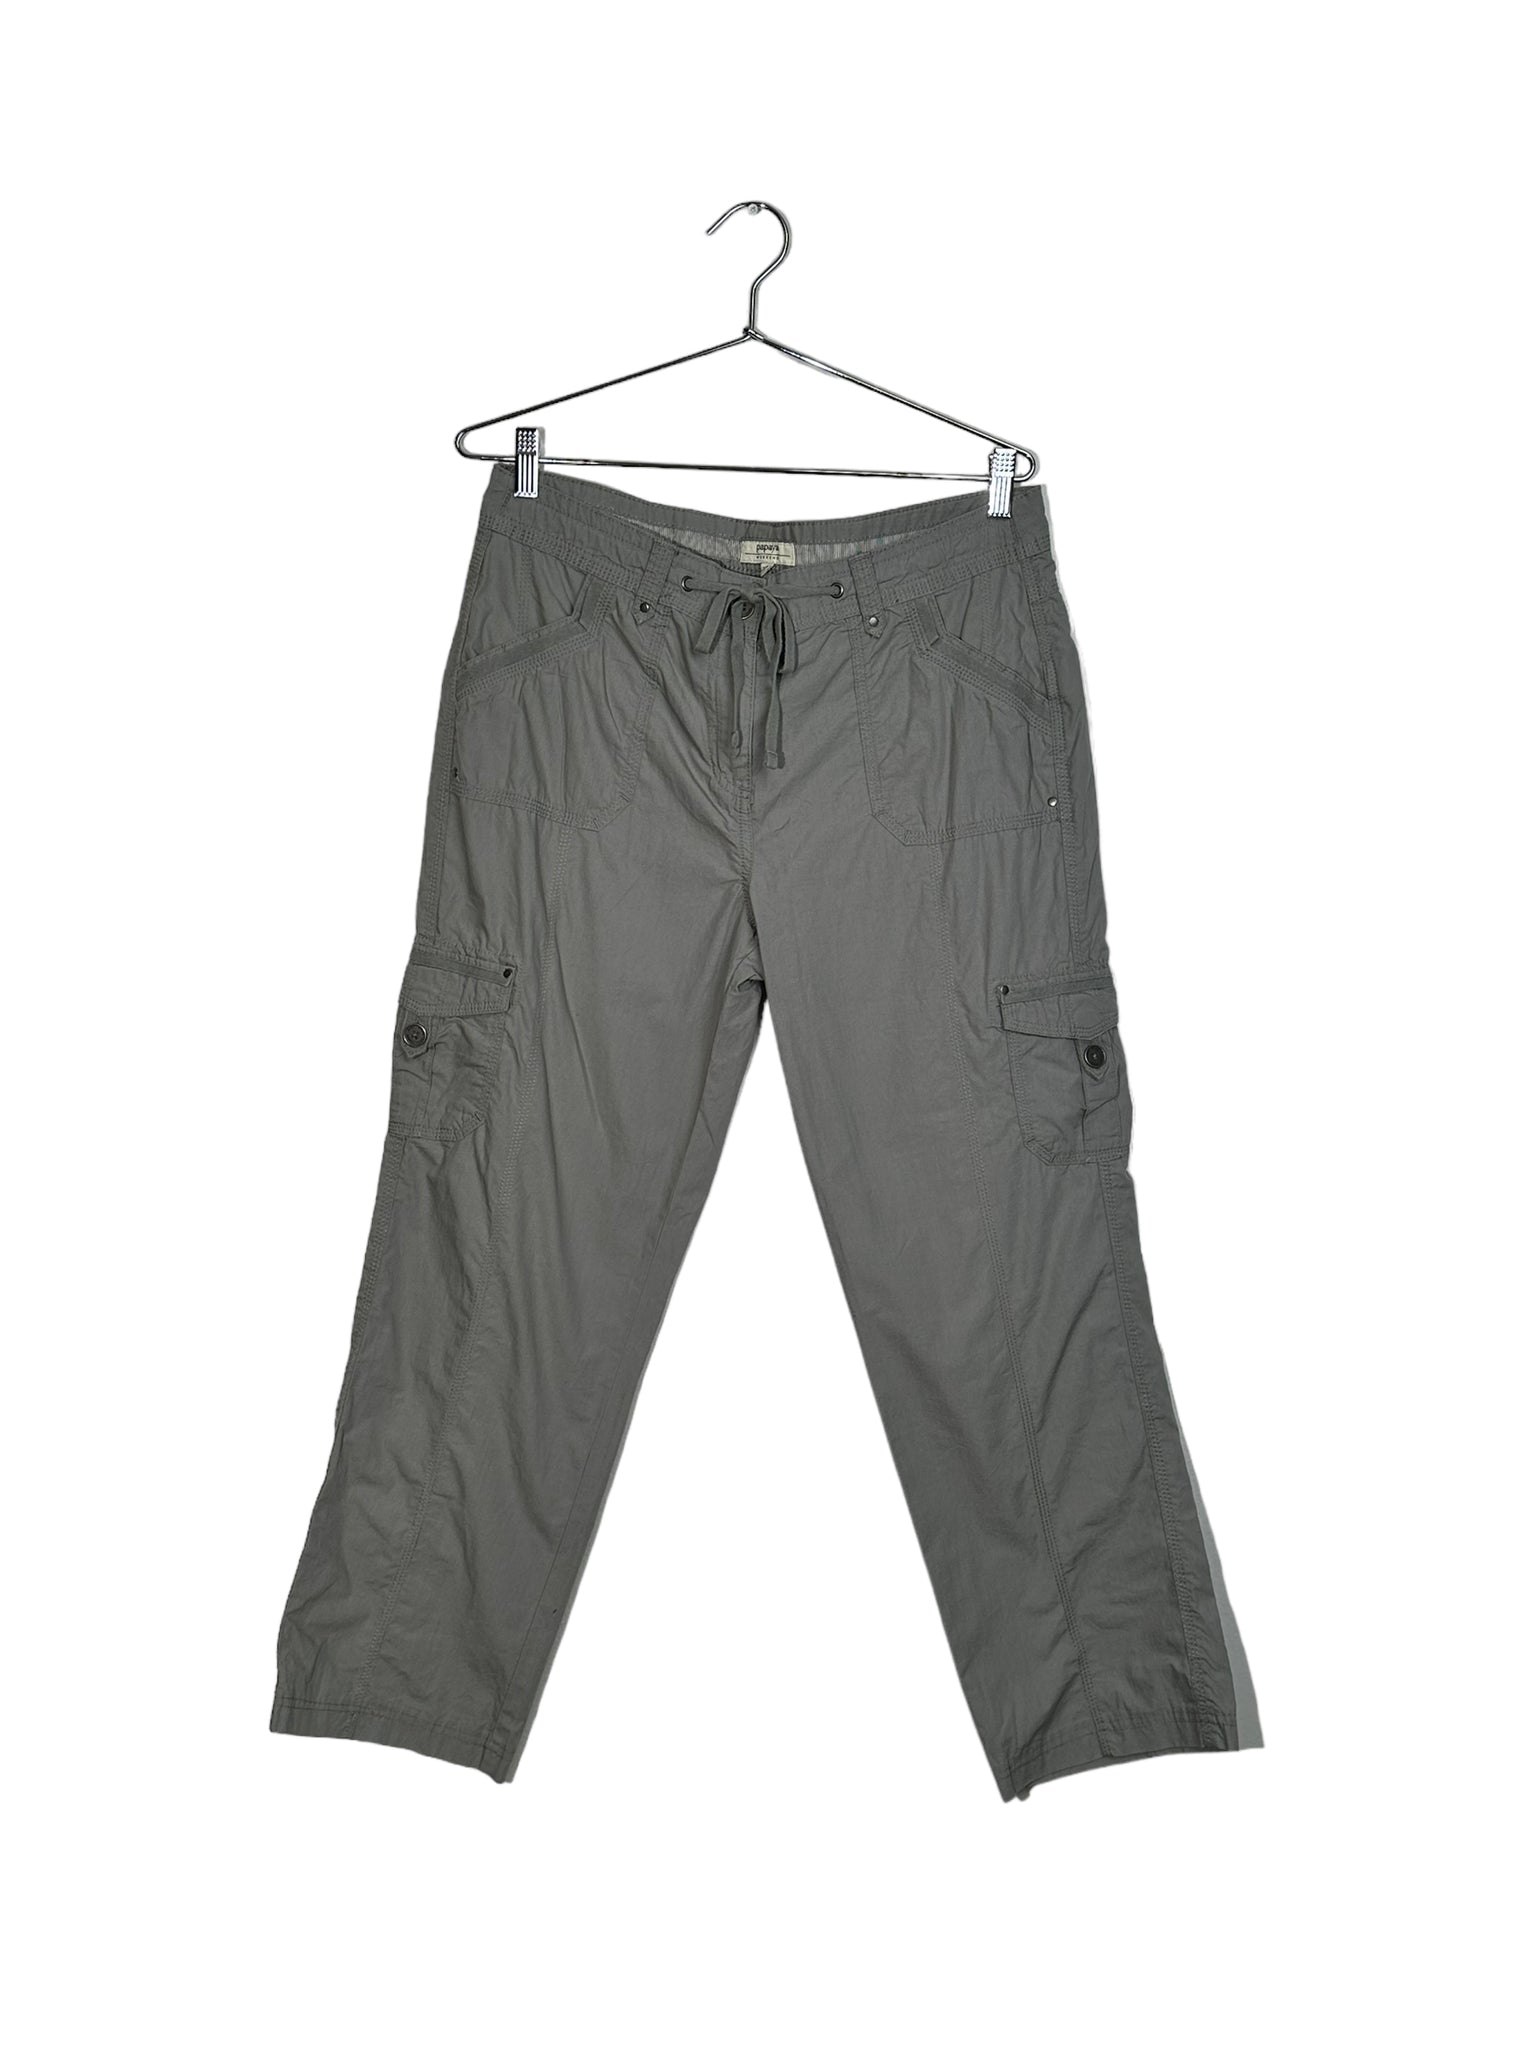 Grey Drawstring Cargo Pants